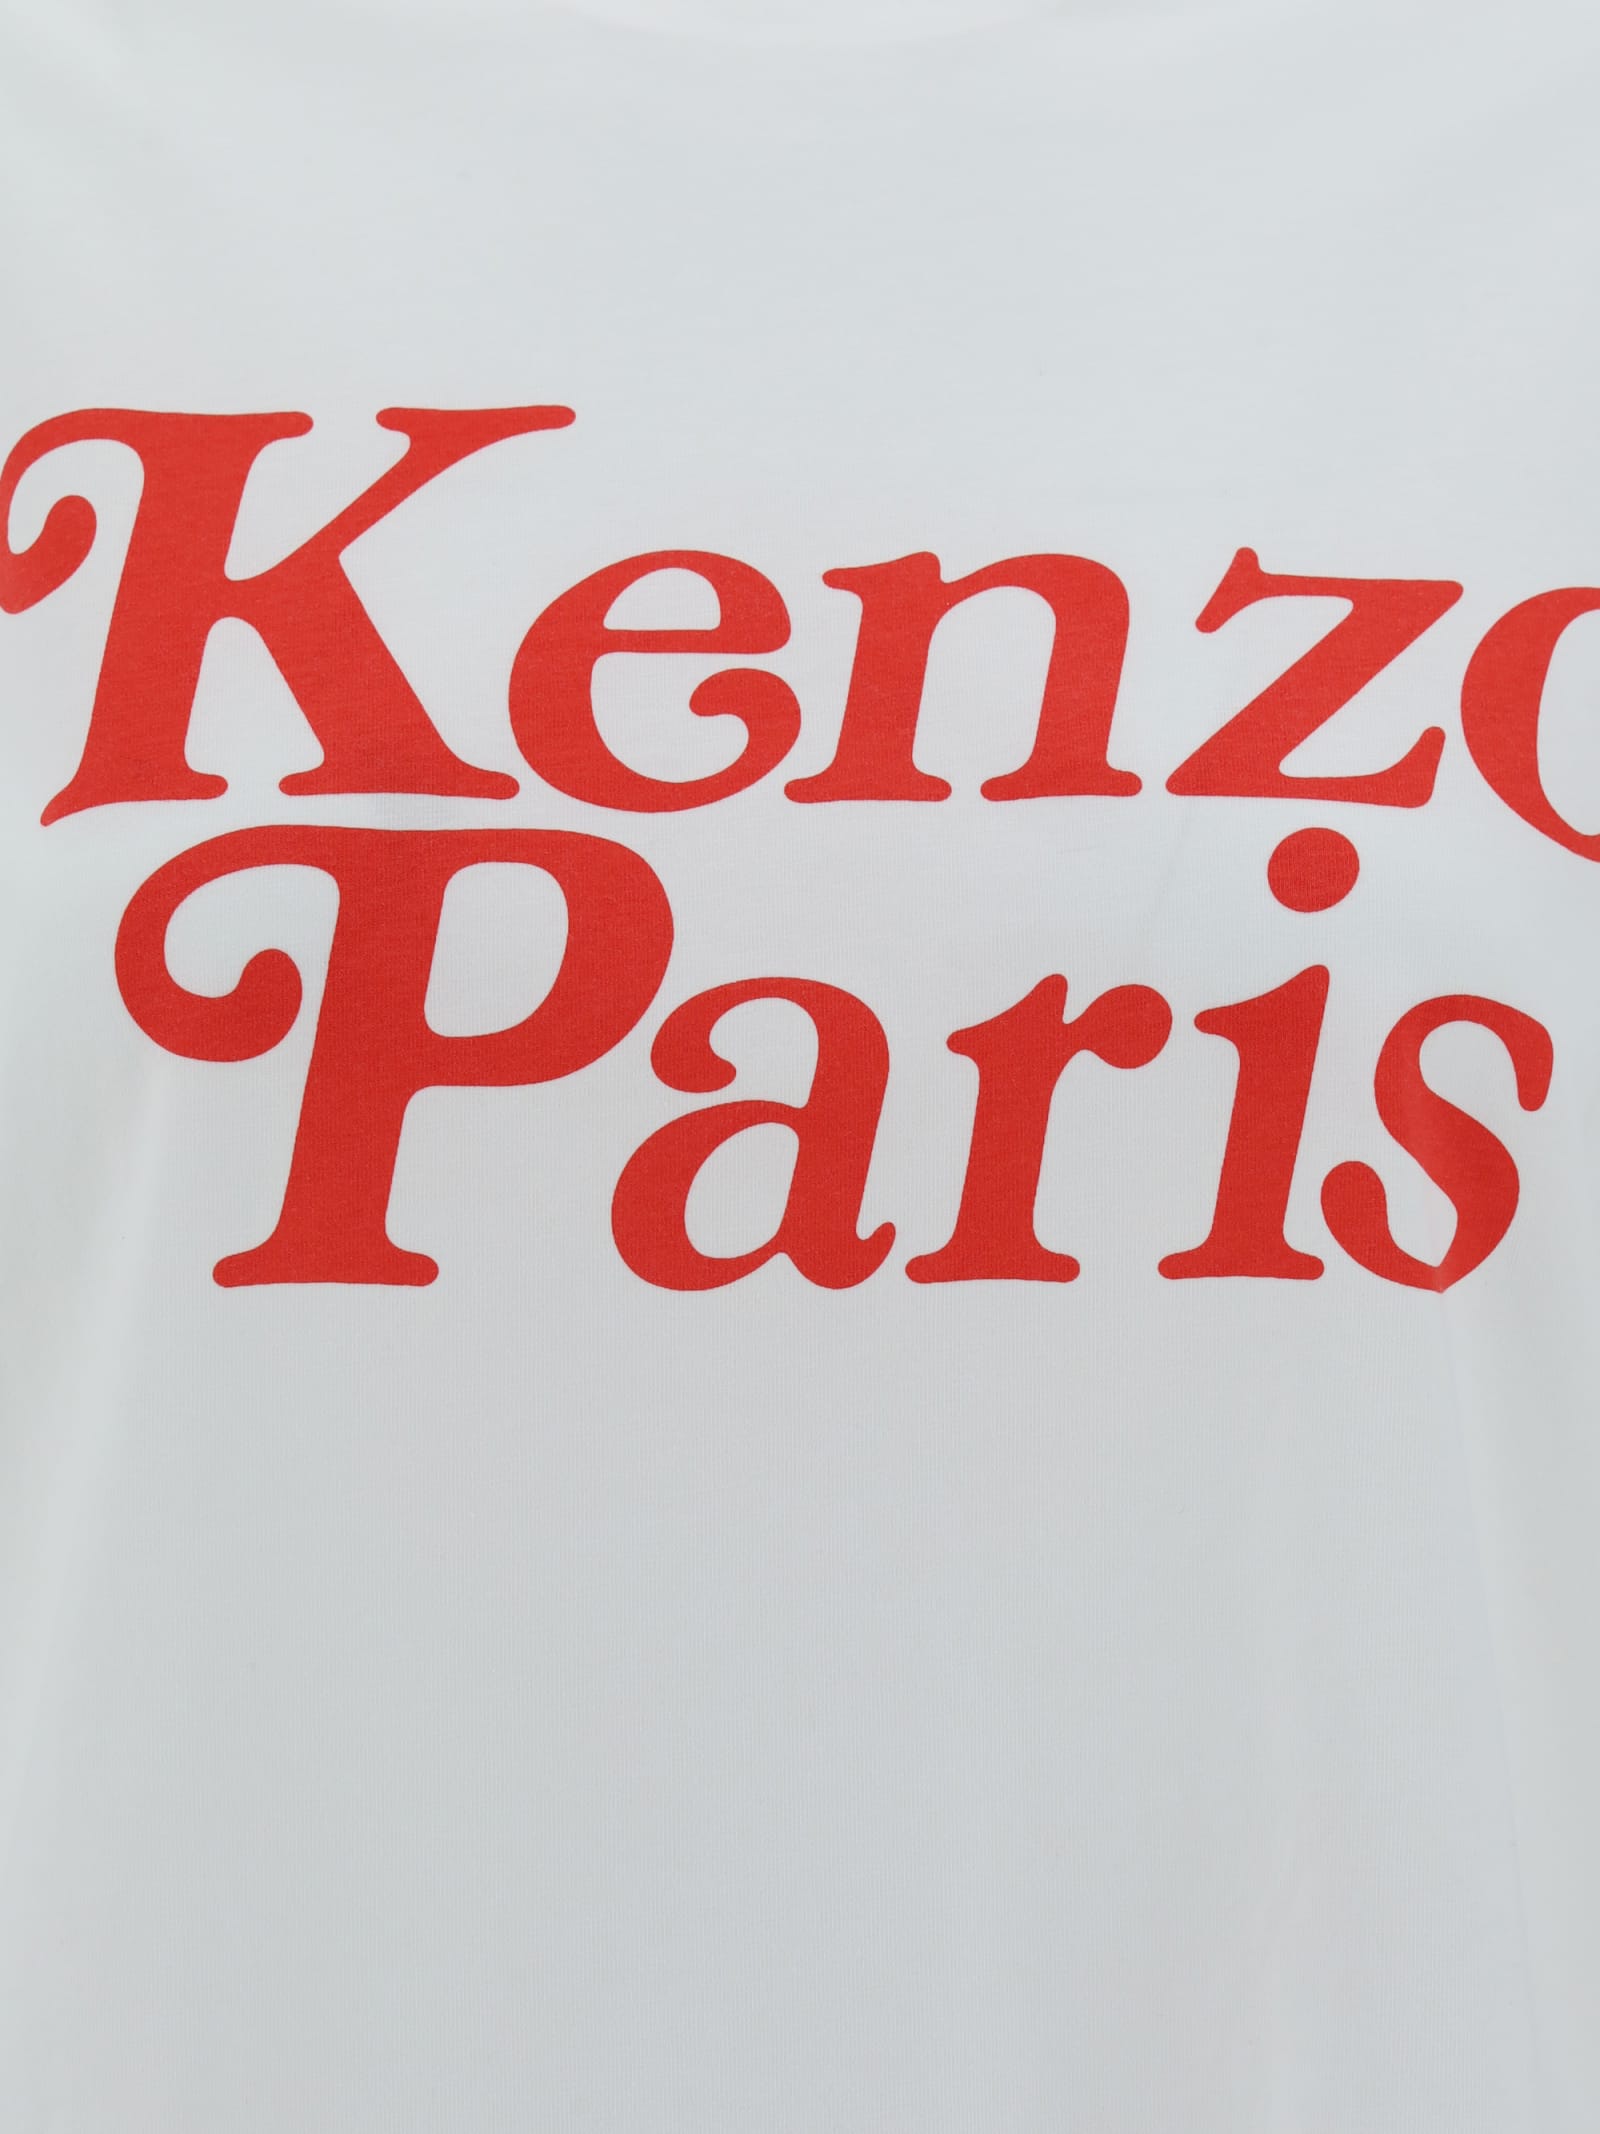 Shop Kenzo T-shirt In Bianco